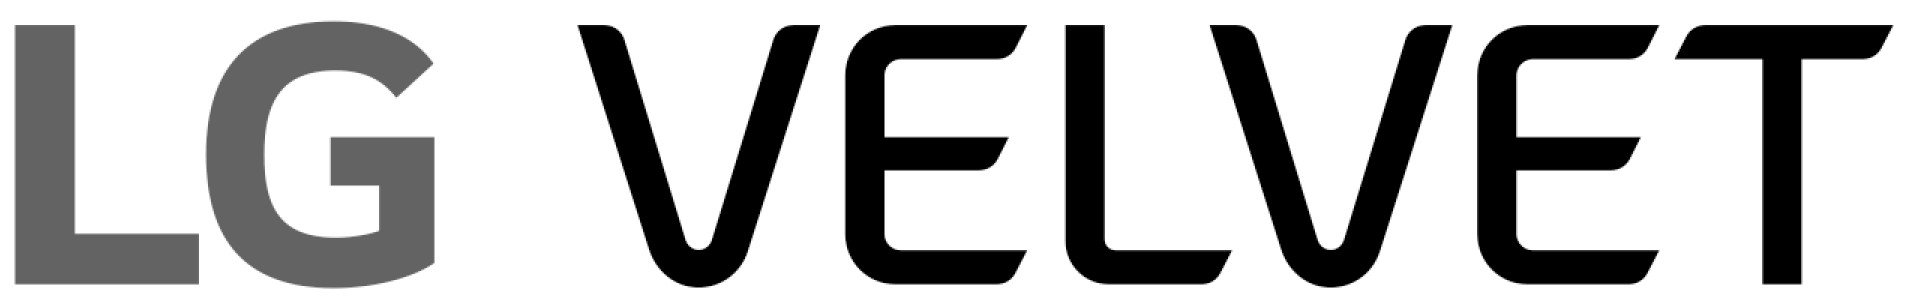 Logo divulgado pela LG mostra o nome do próximo smartphone, chamado de Velvet.